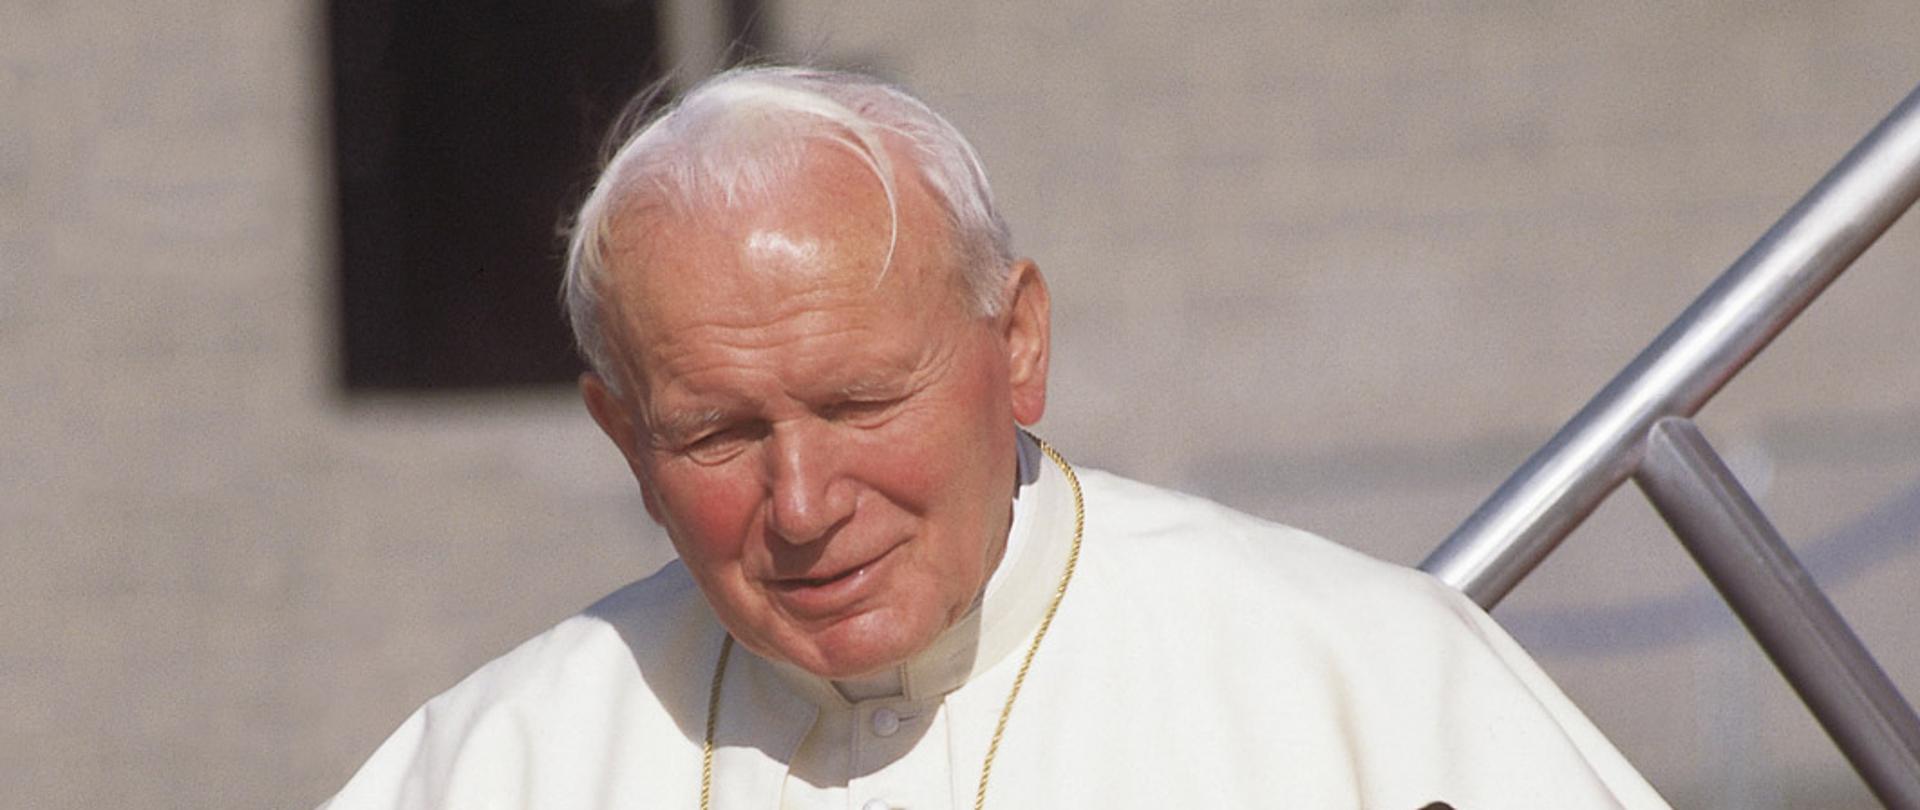 8.10.1995 Baltimora, USA. Il Papa Giovanni Paolo II abbraccia due bambini all'aeroporto. 